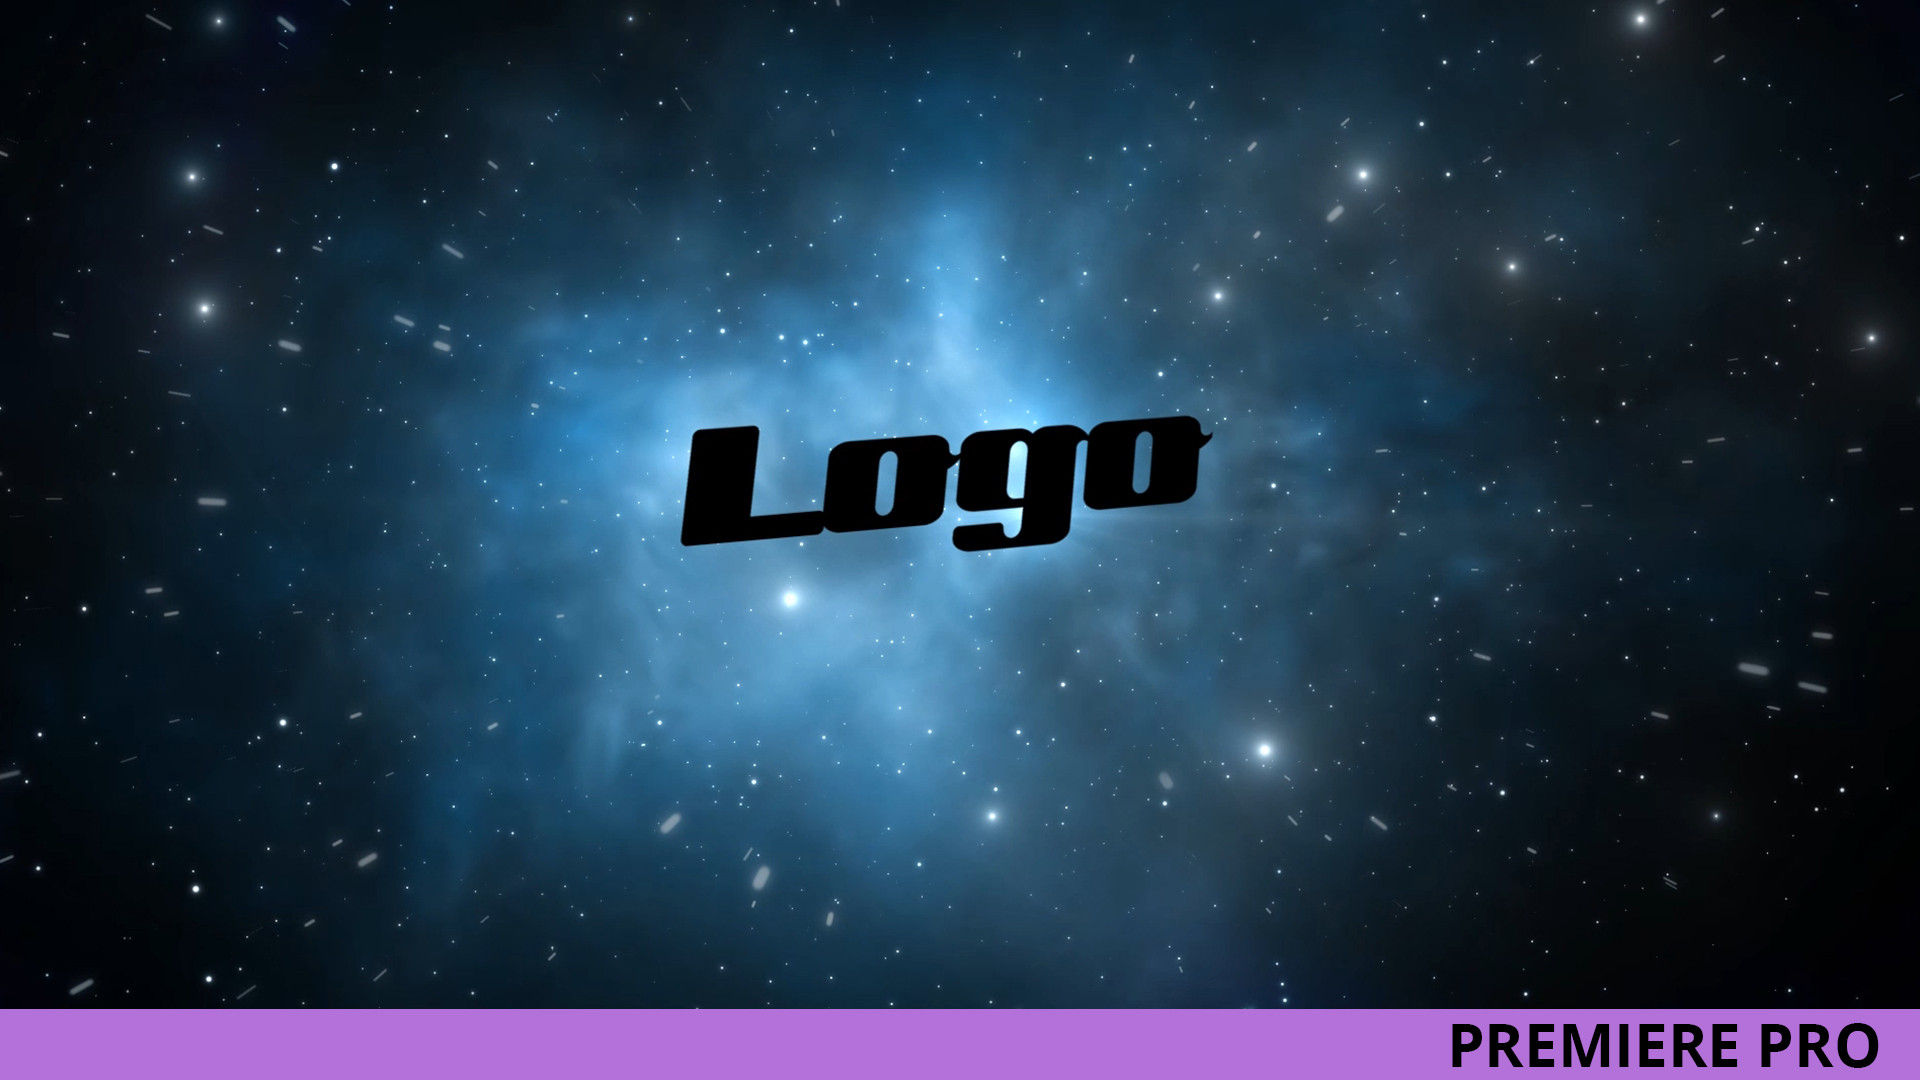 银河系太空标志LOGO展示素材天下推荐PR模板